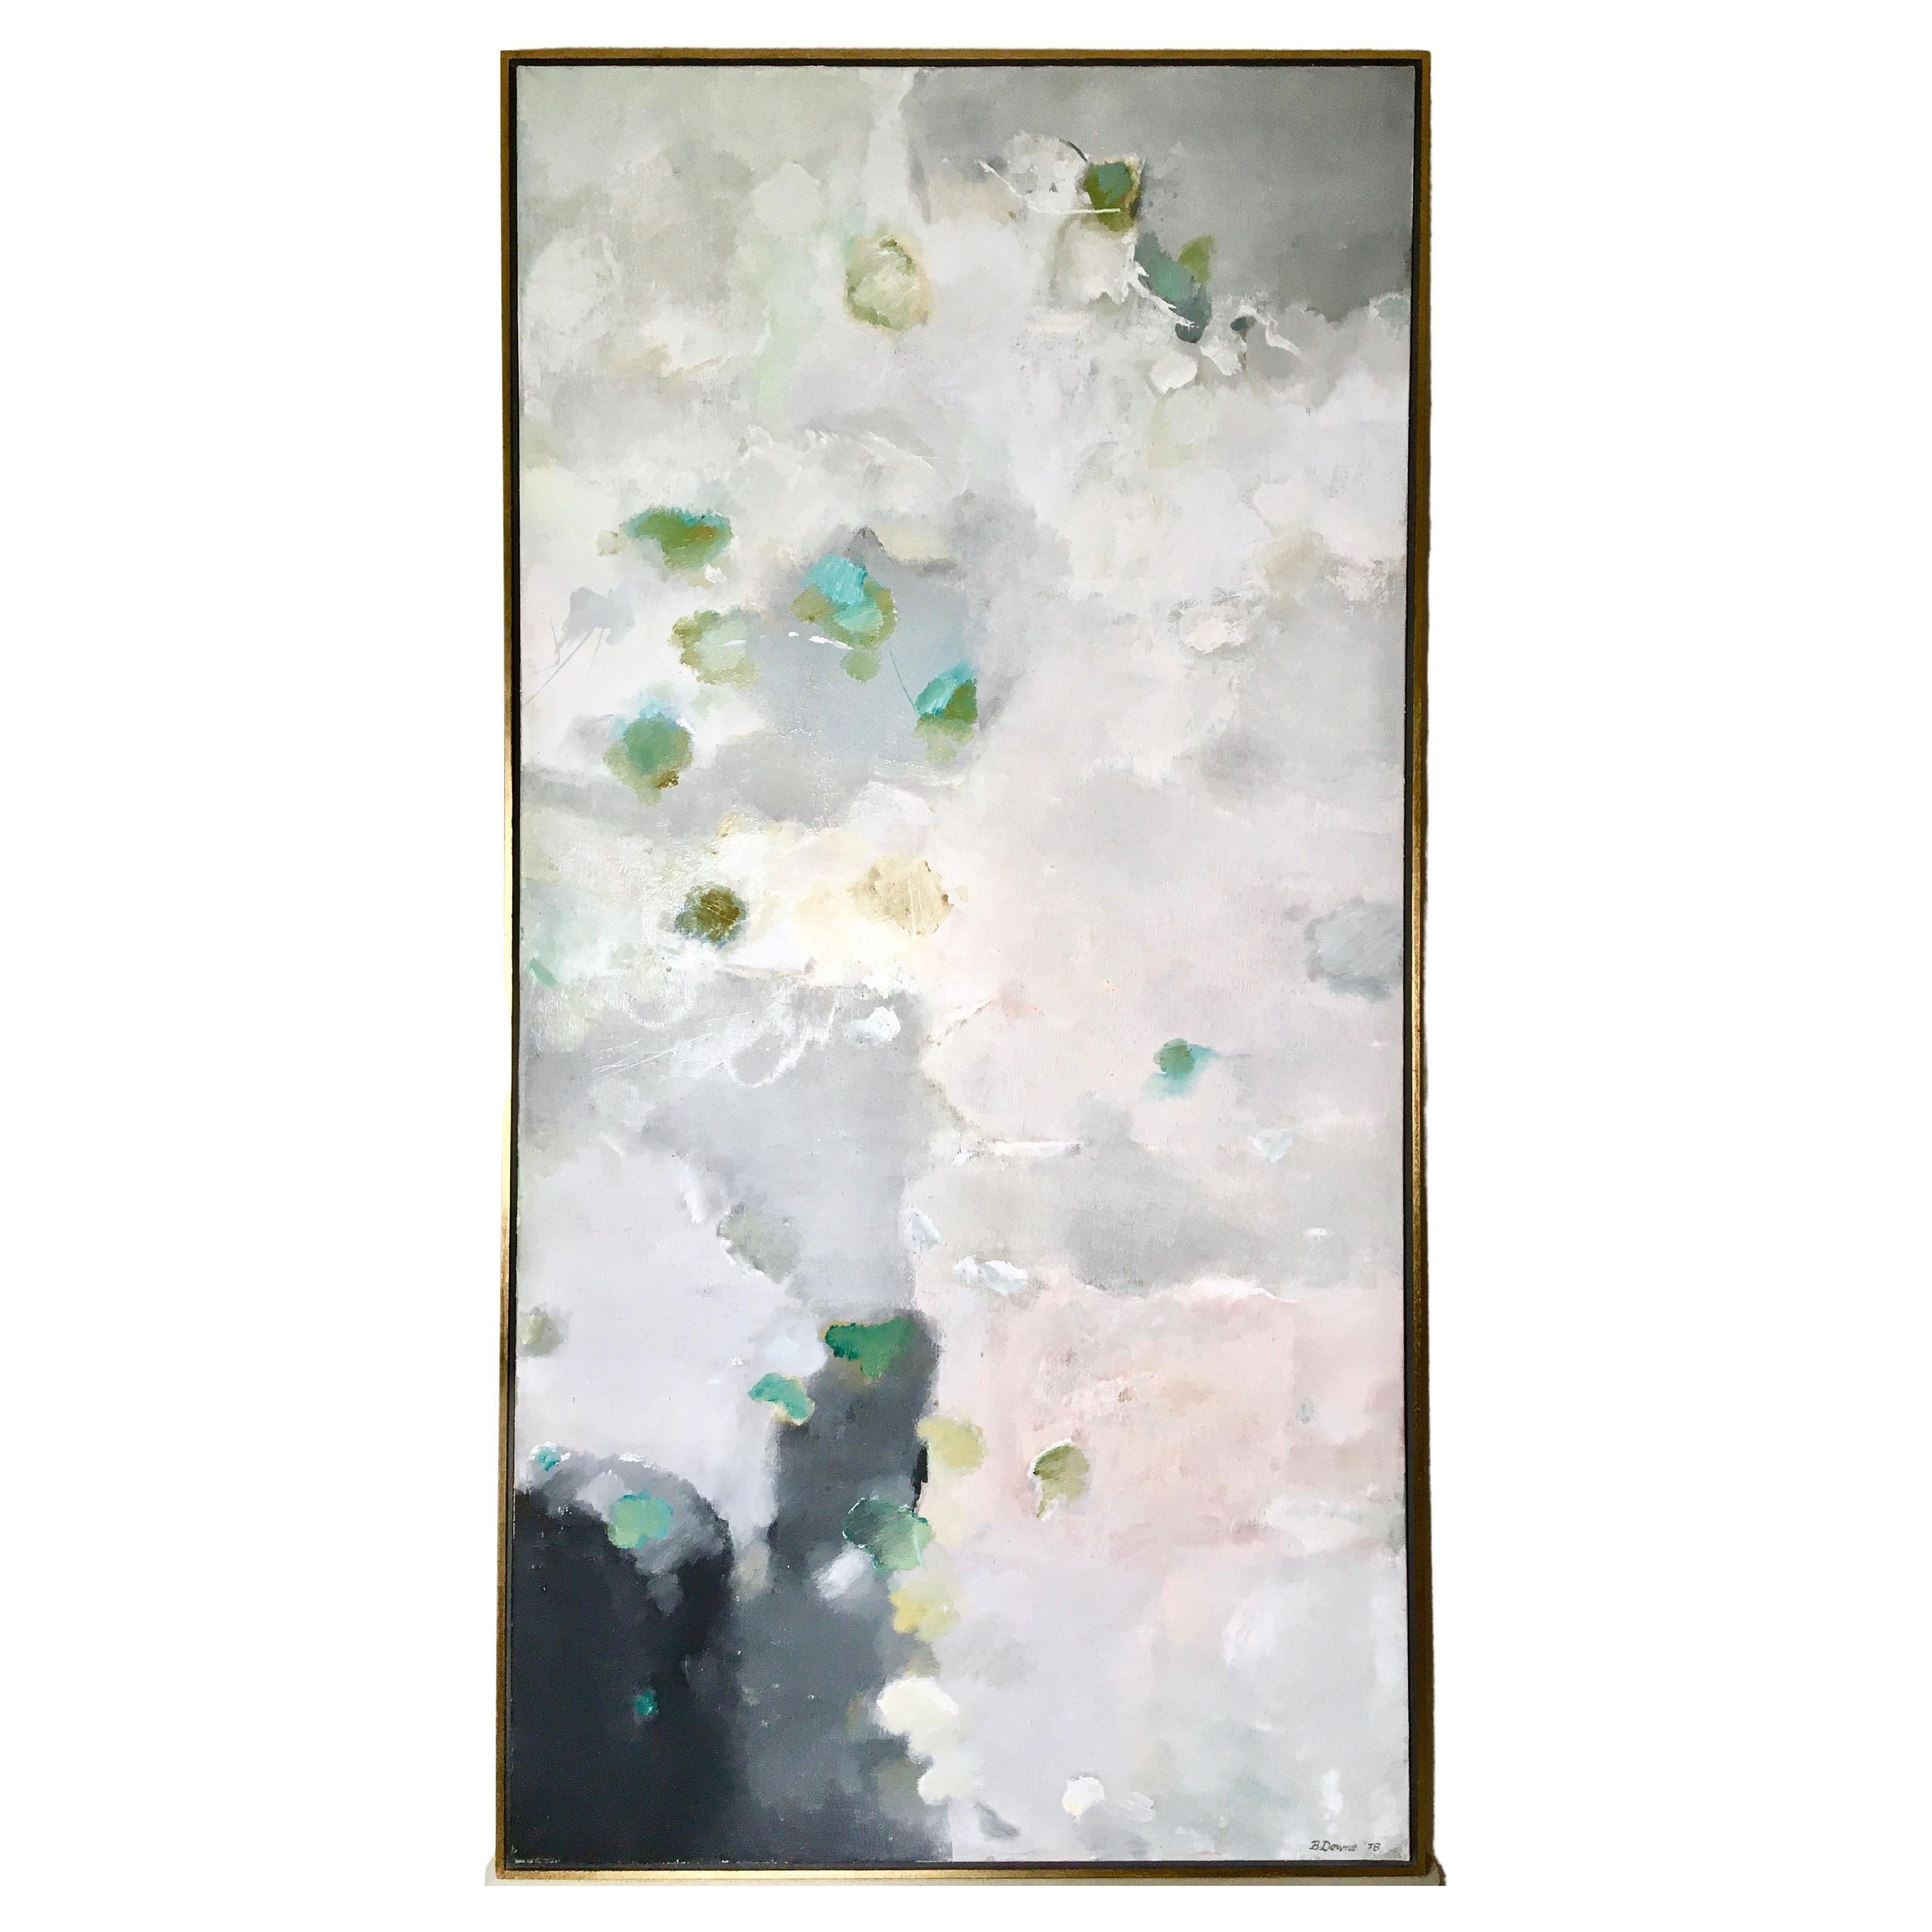 Grande huile sur toile abstraite grise et verte par Beverley Downie, 1978, cadre d'origine